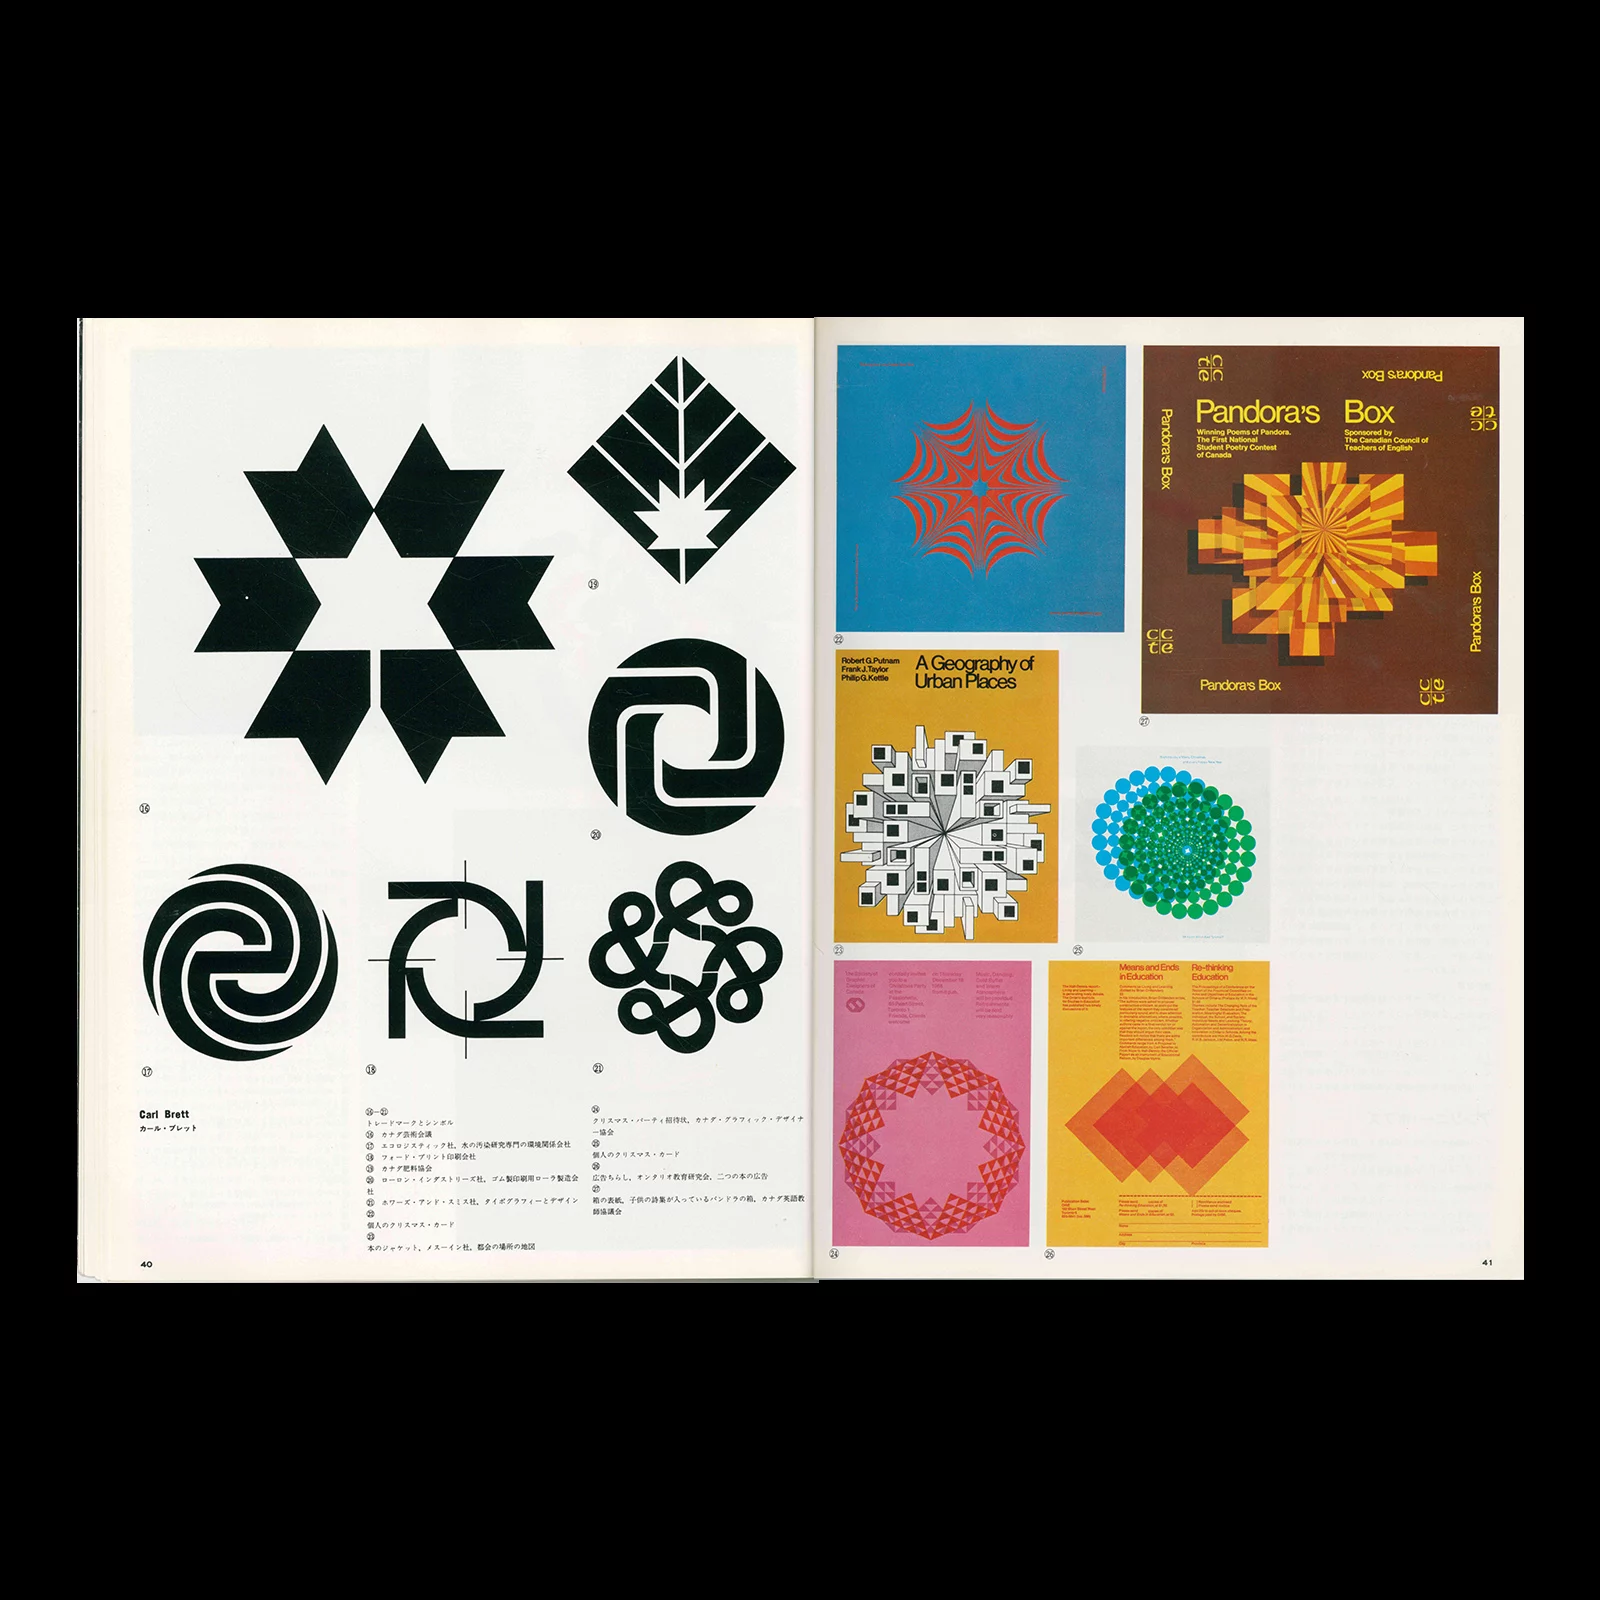 IDEA Extra Issue - Graphic Design in Canada, 1975 - Carl Brett